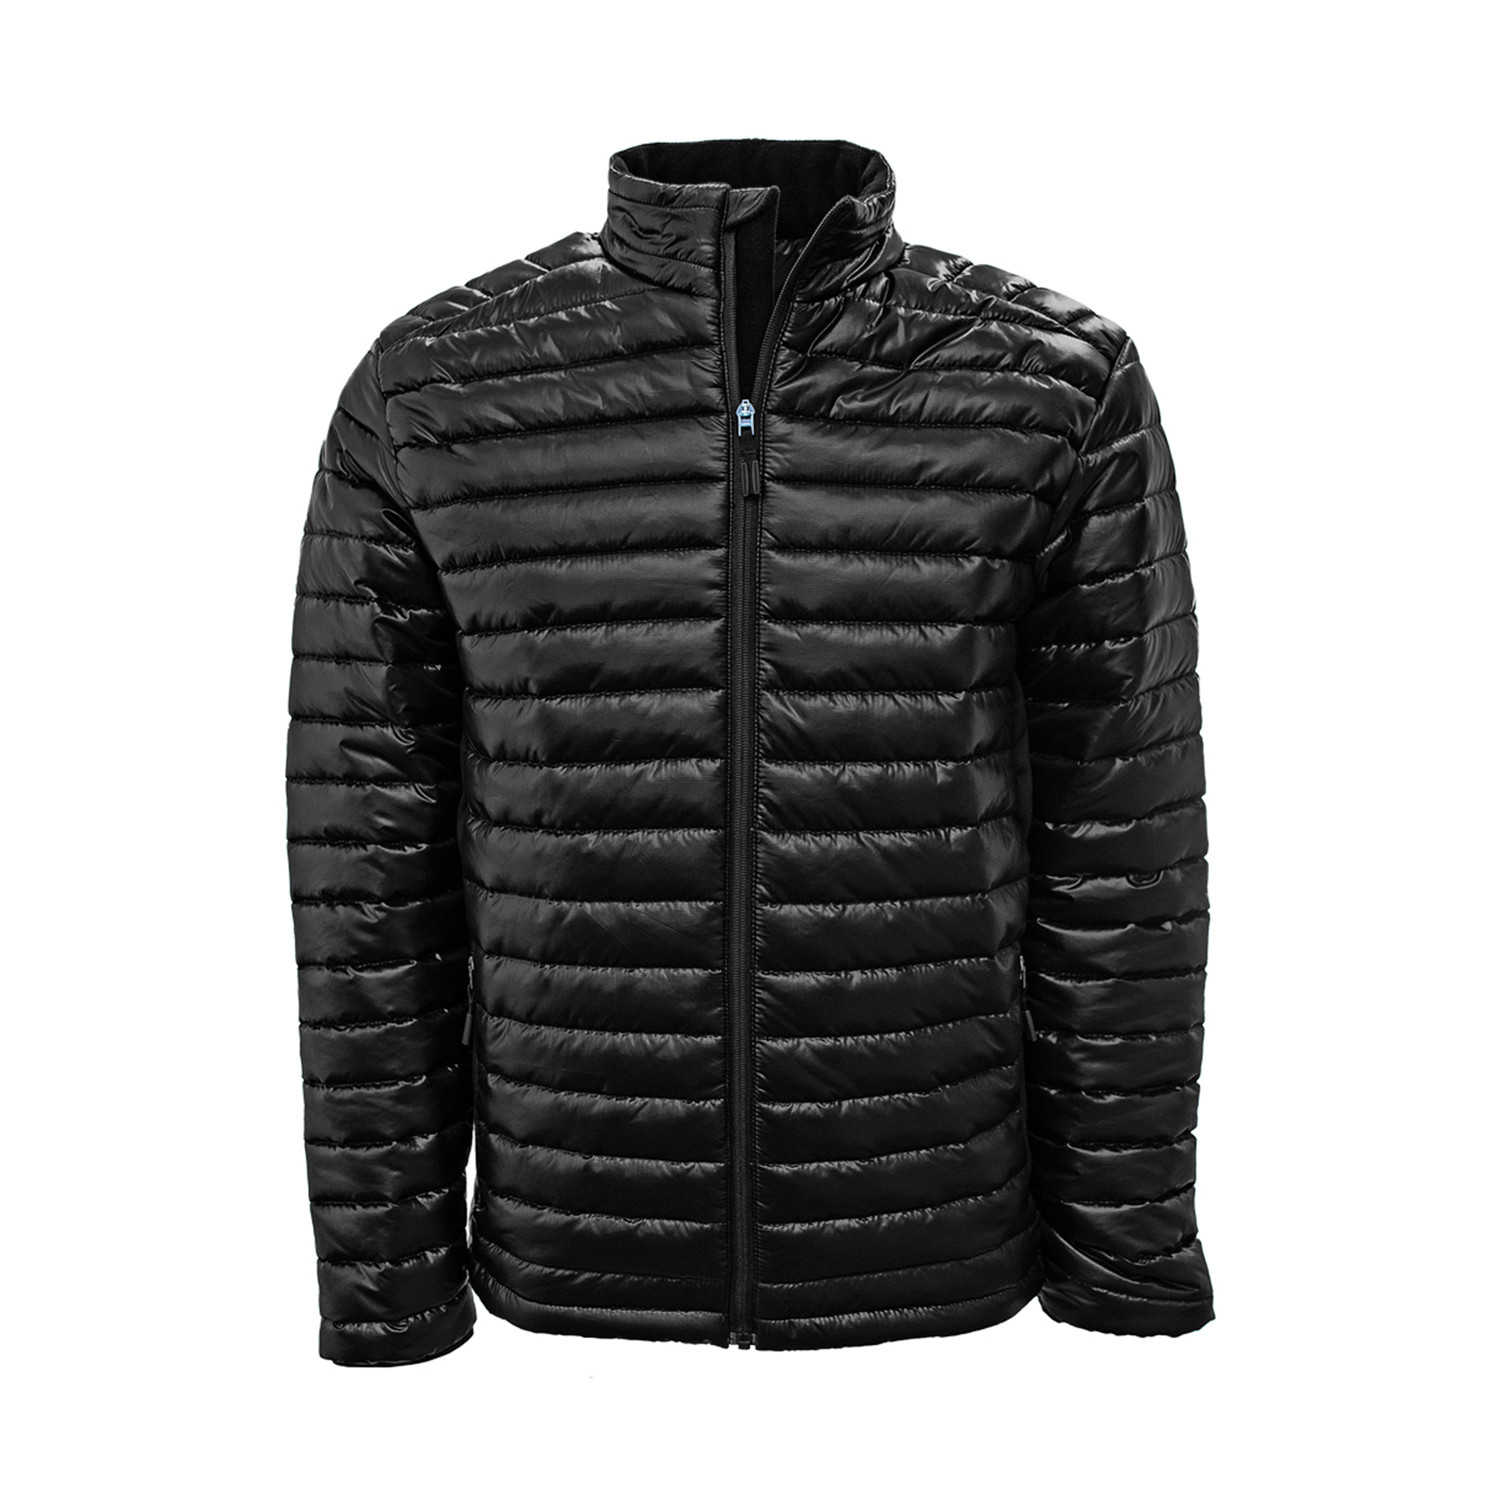 Sphere Jacket // Black (S) - Levelwear - Touch of Modern